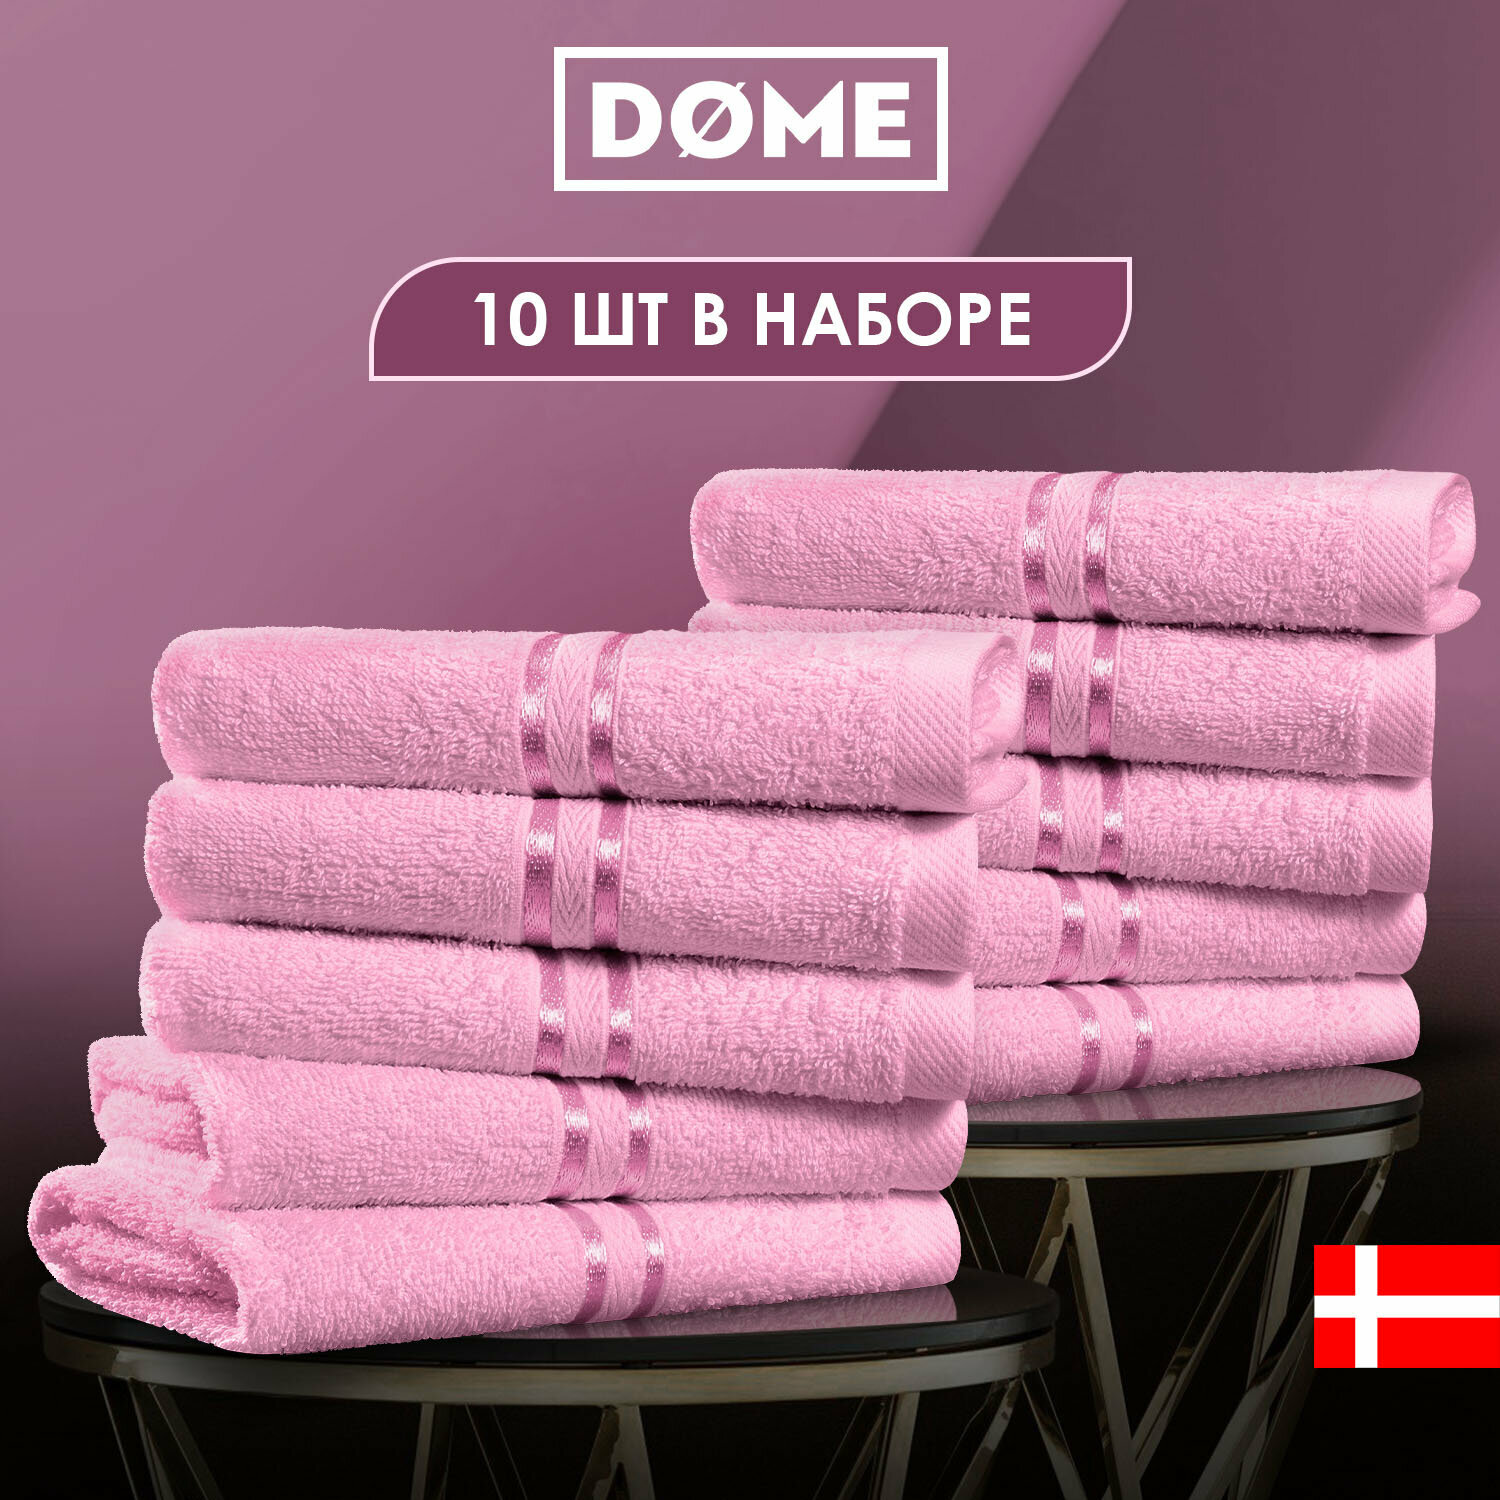 Dome Полотенце для рук Harmonika Цвет: Розовый 33х50 см - 10 шт